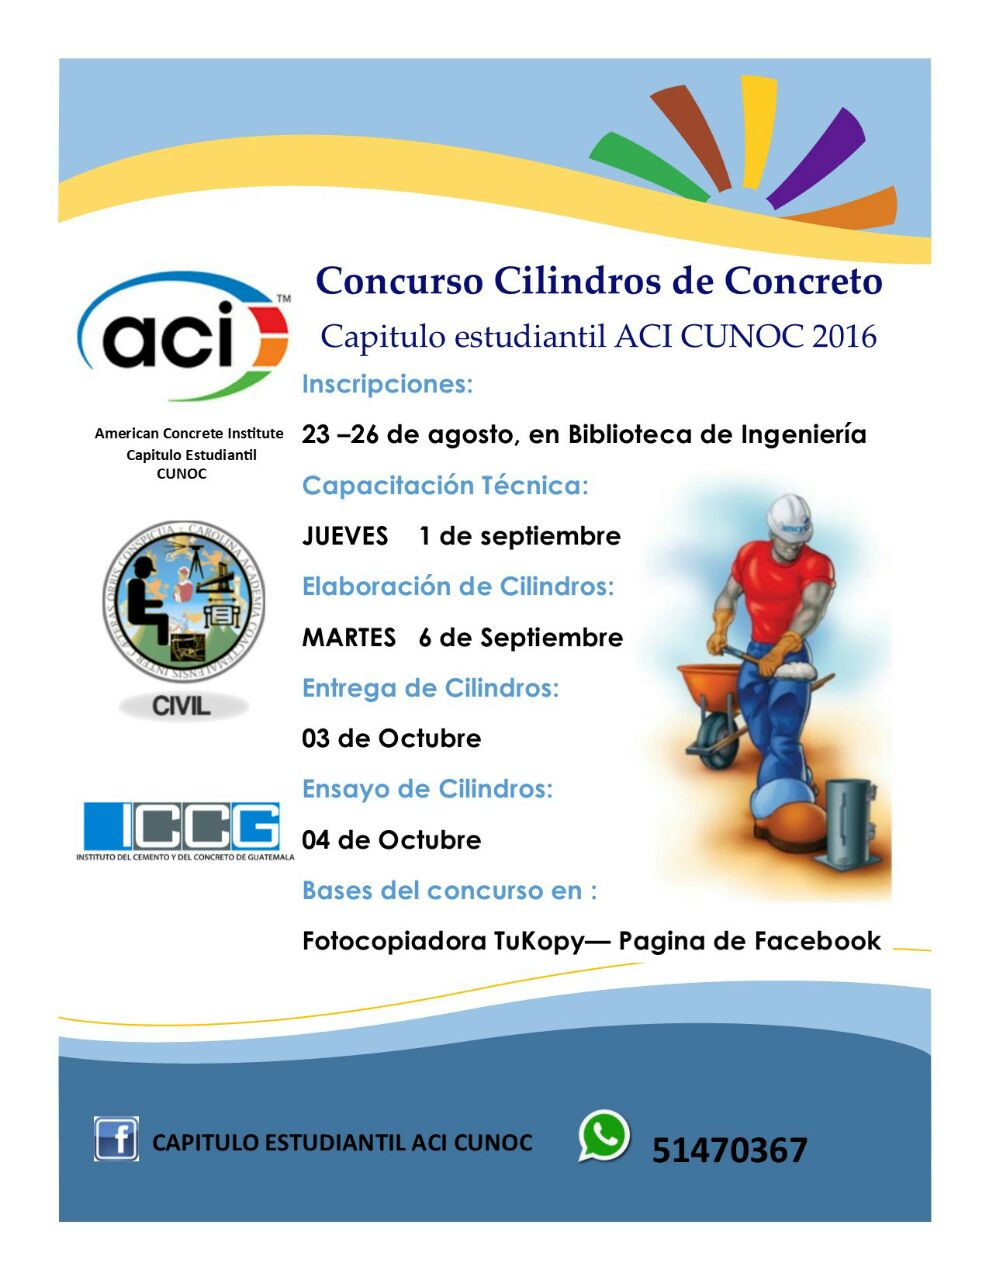 Concurso de Cilindros de Concreto ACI CUNOC 2016